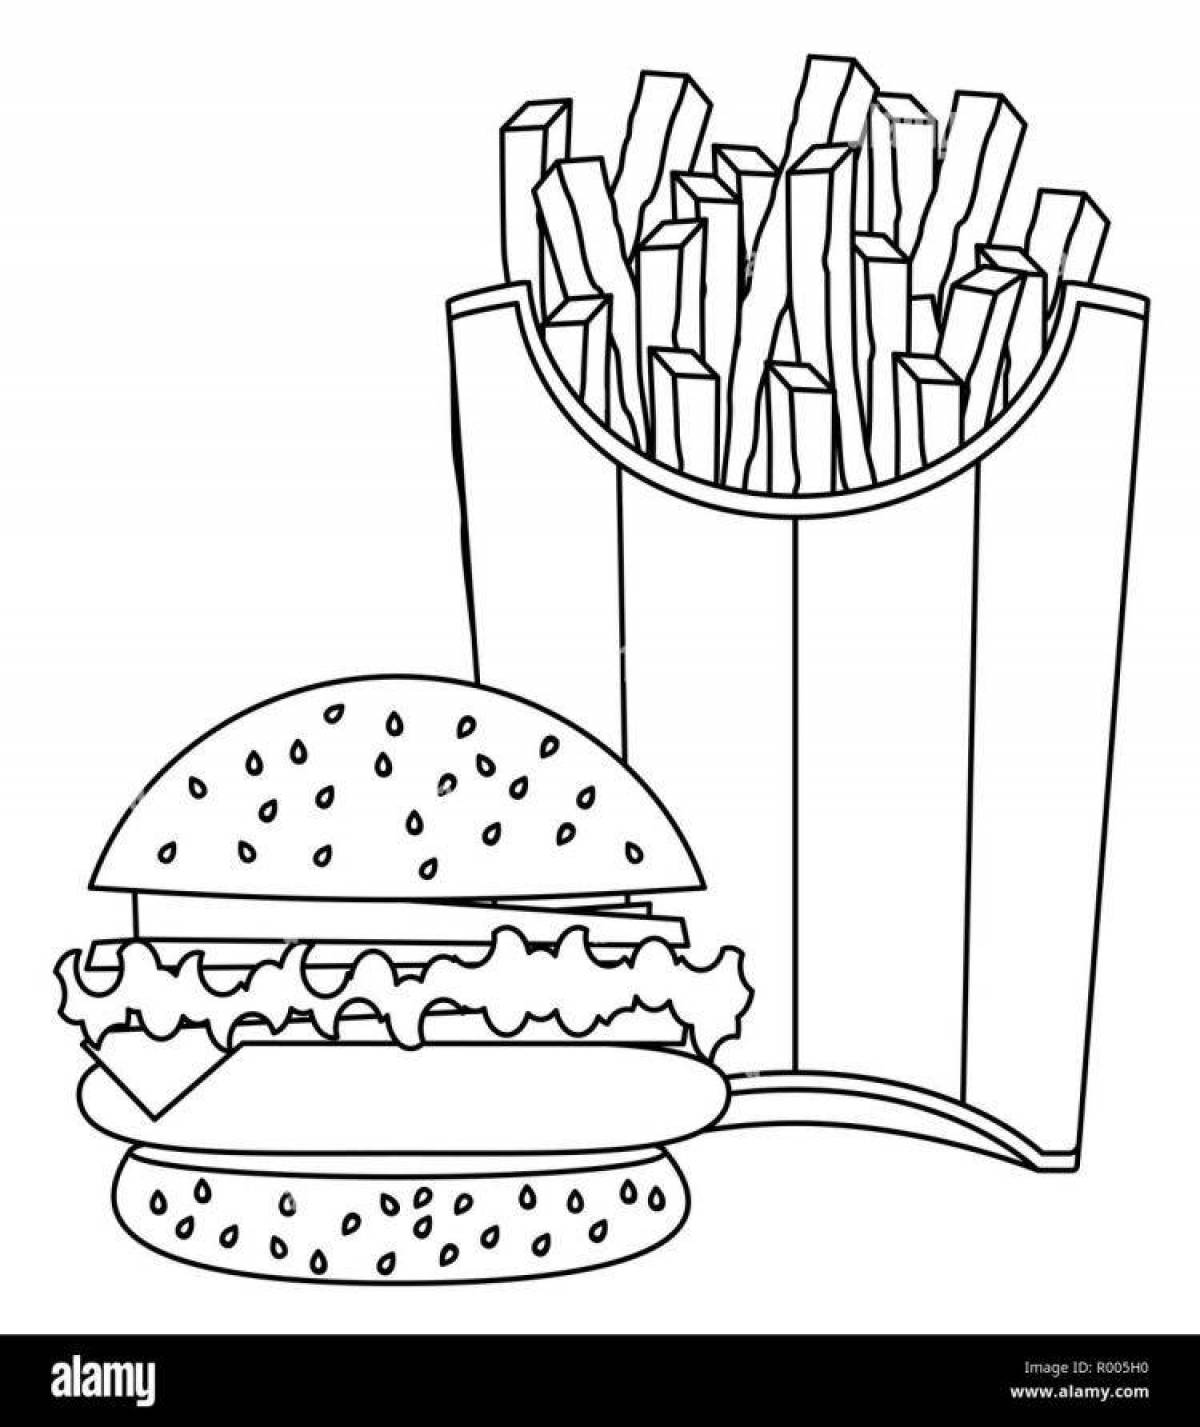 Красочная страница раскраски бургеров и картофеля фри